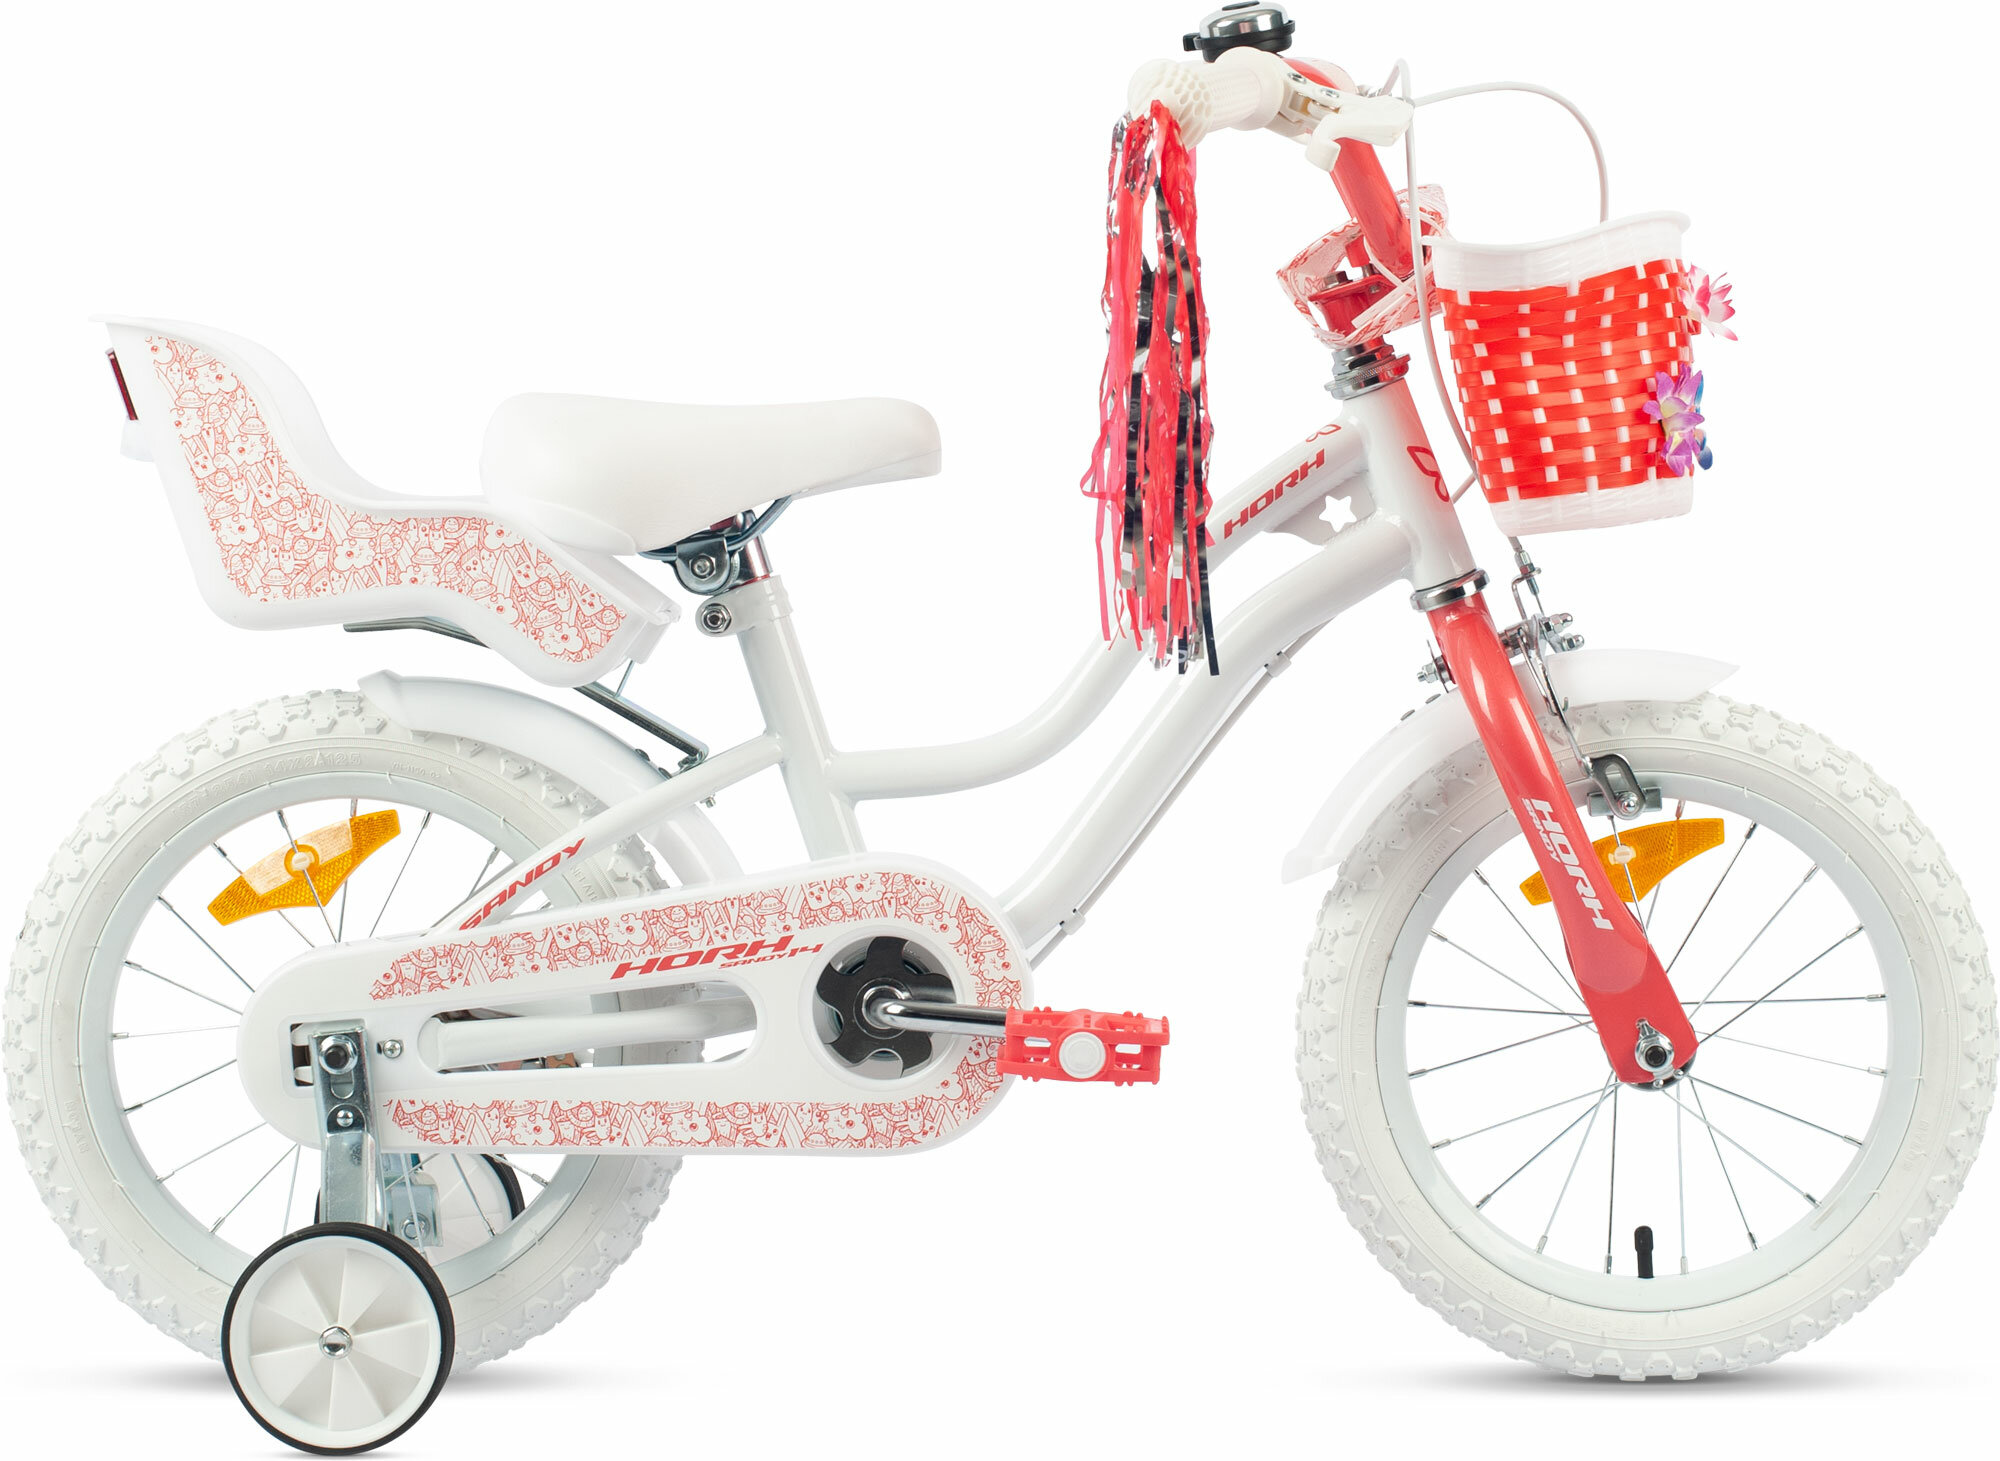 Велосипед детский городской HORH SANDY 14 2024 для детей от 2 до 4 лет стальной с защитой цепи корзиной креслом звонком, крыльями, 1 скорость, ободной и барабанный тормоз коралловый рост 95-110